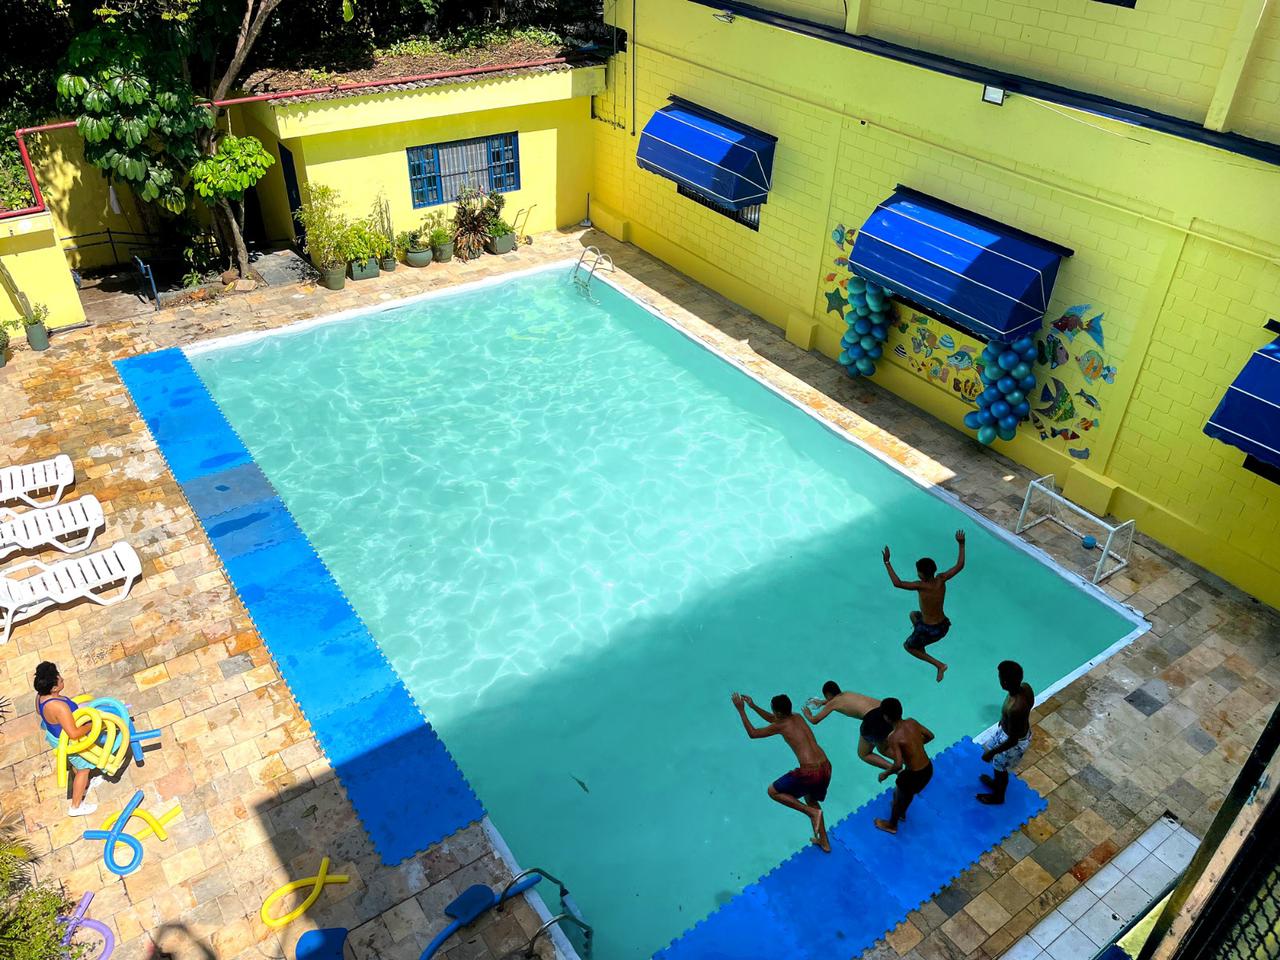 Argapool reforma piscina da ONG Casa do Zezinho em menos de 24h